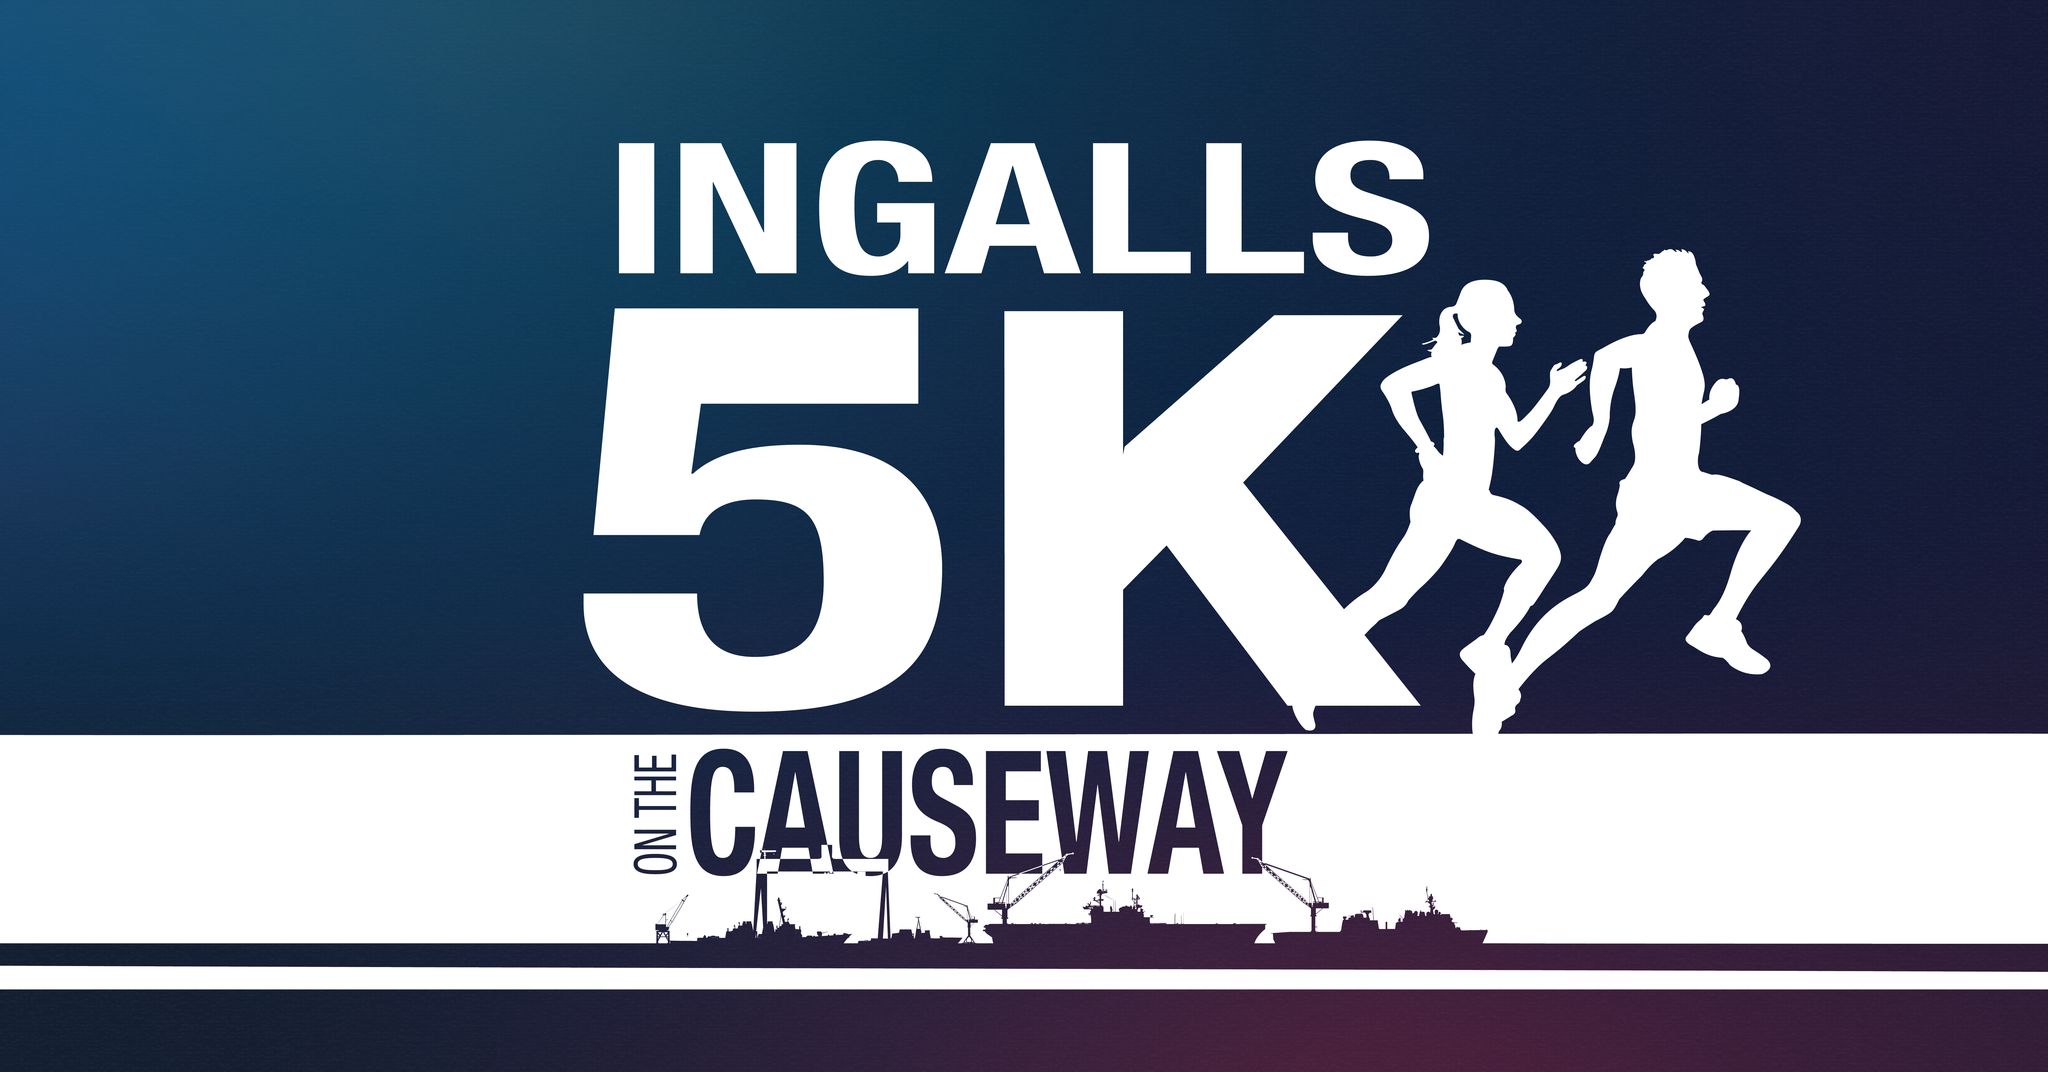 Ingalls 5k on the Causeway logo